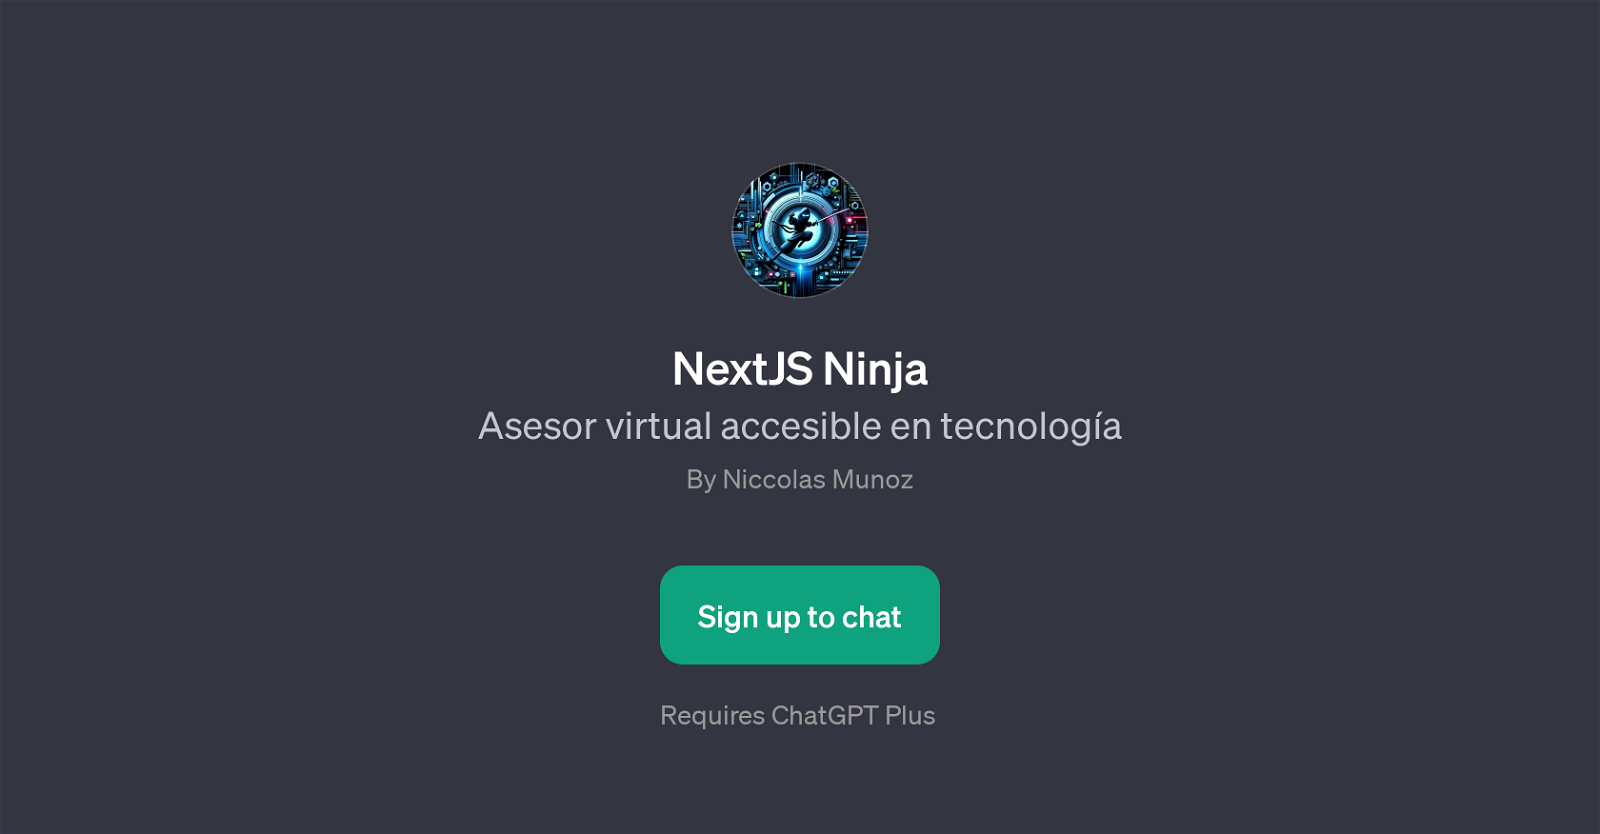 NextJS Ninja website